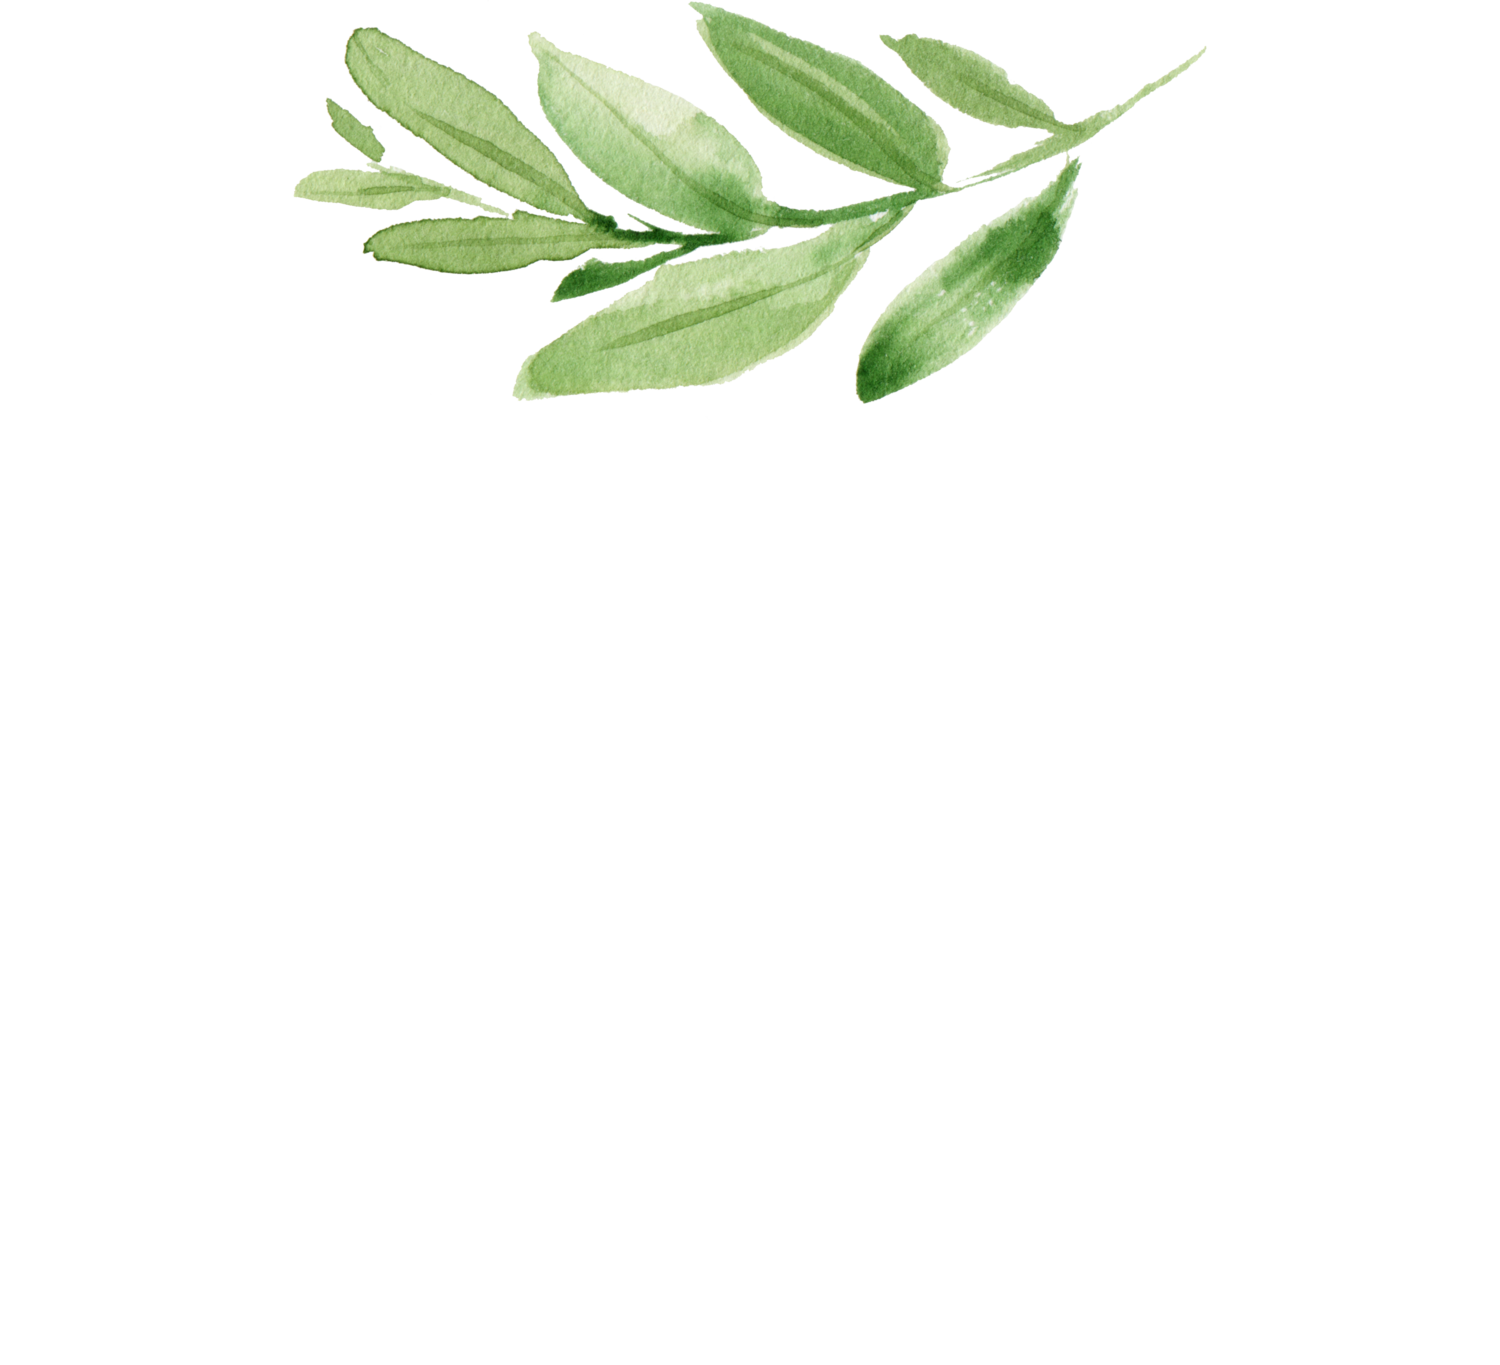 CoCoBella Photography